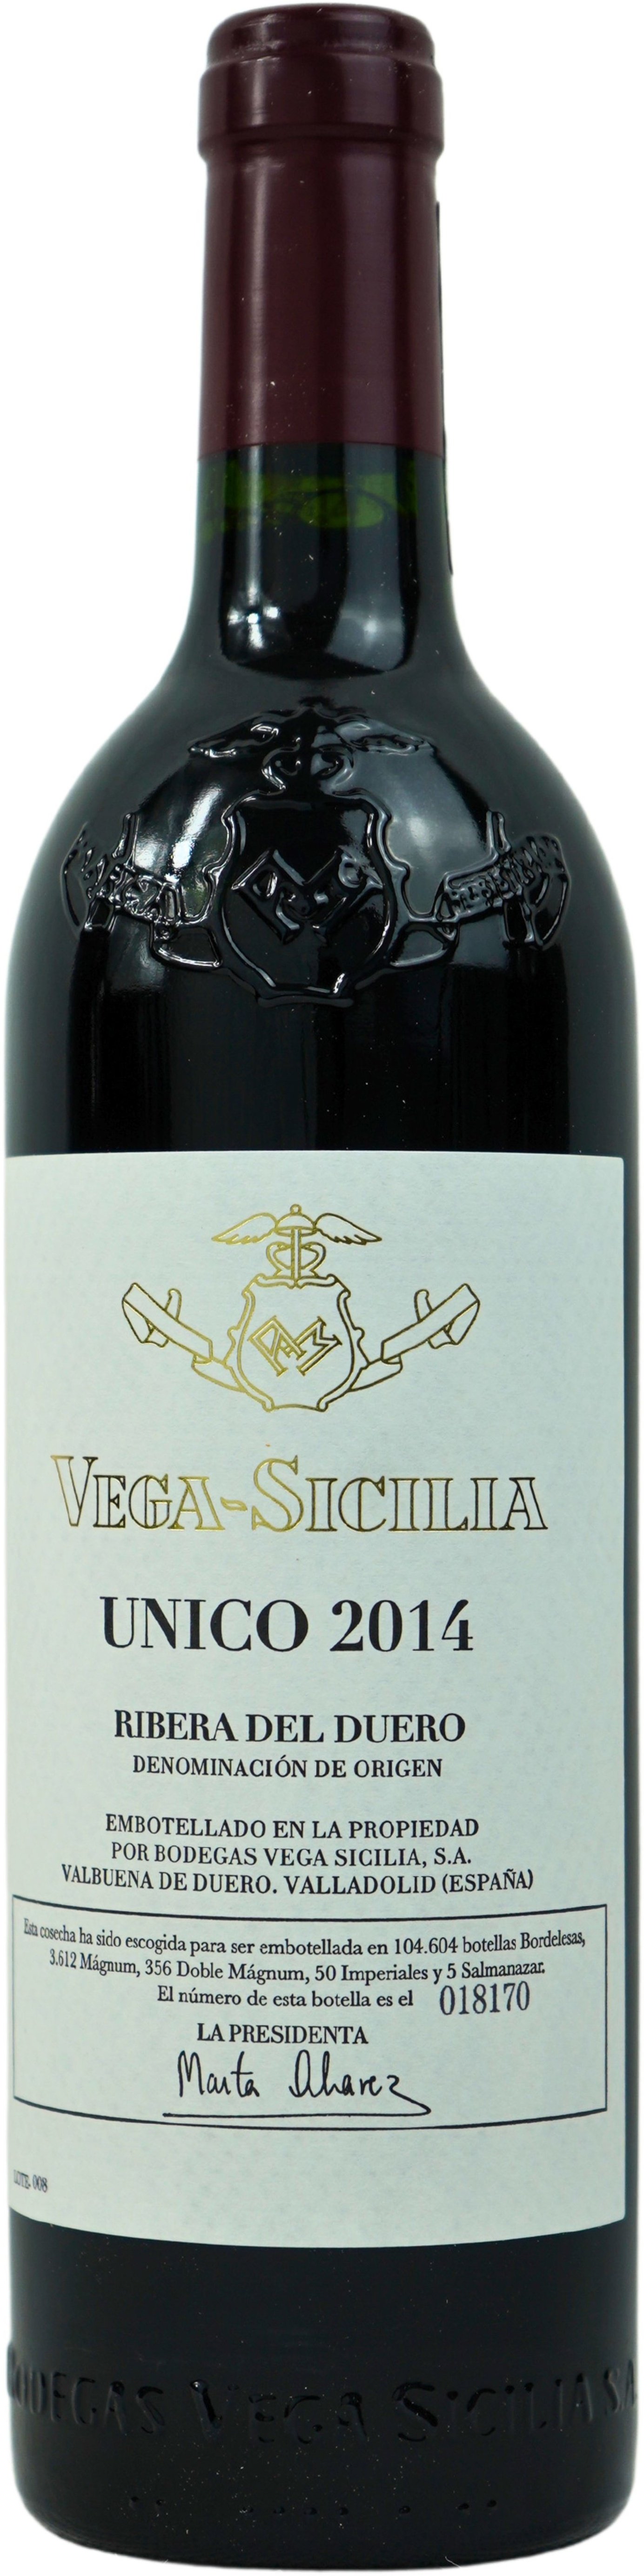 2014 Unico Vega Sicilia